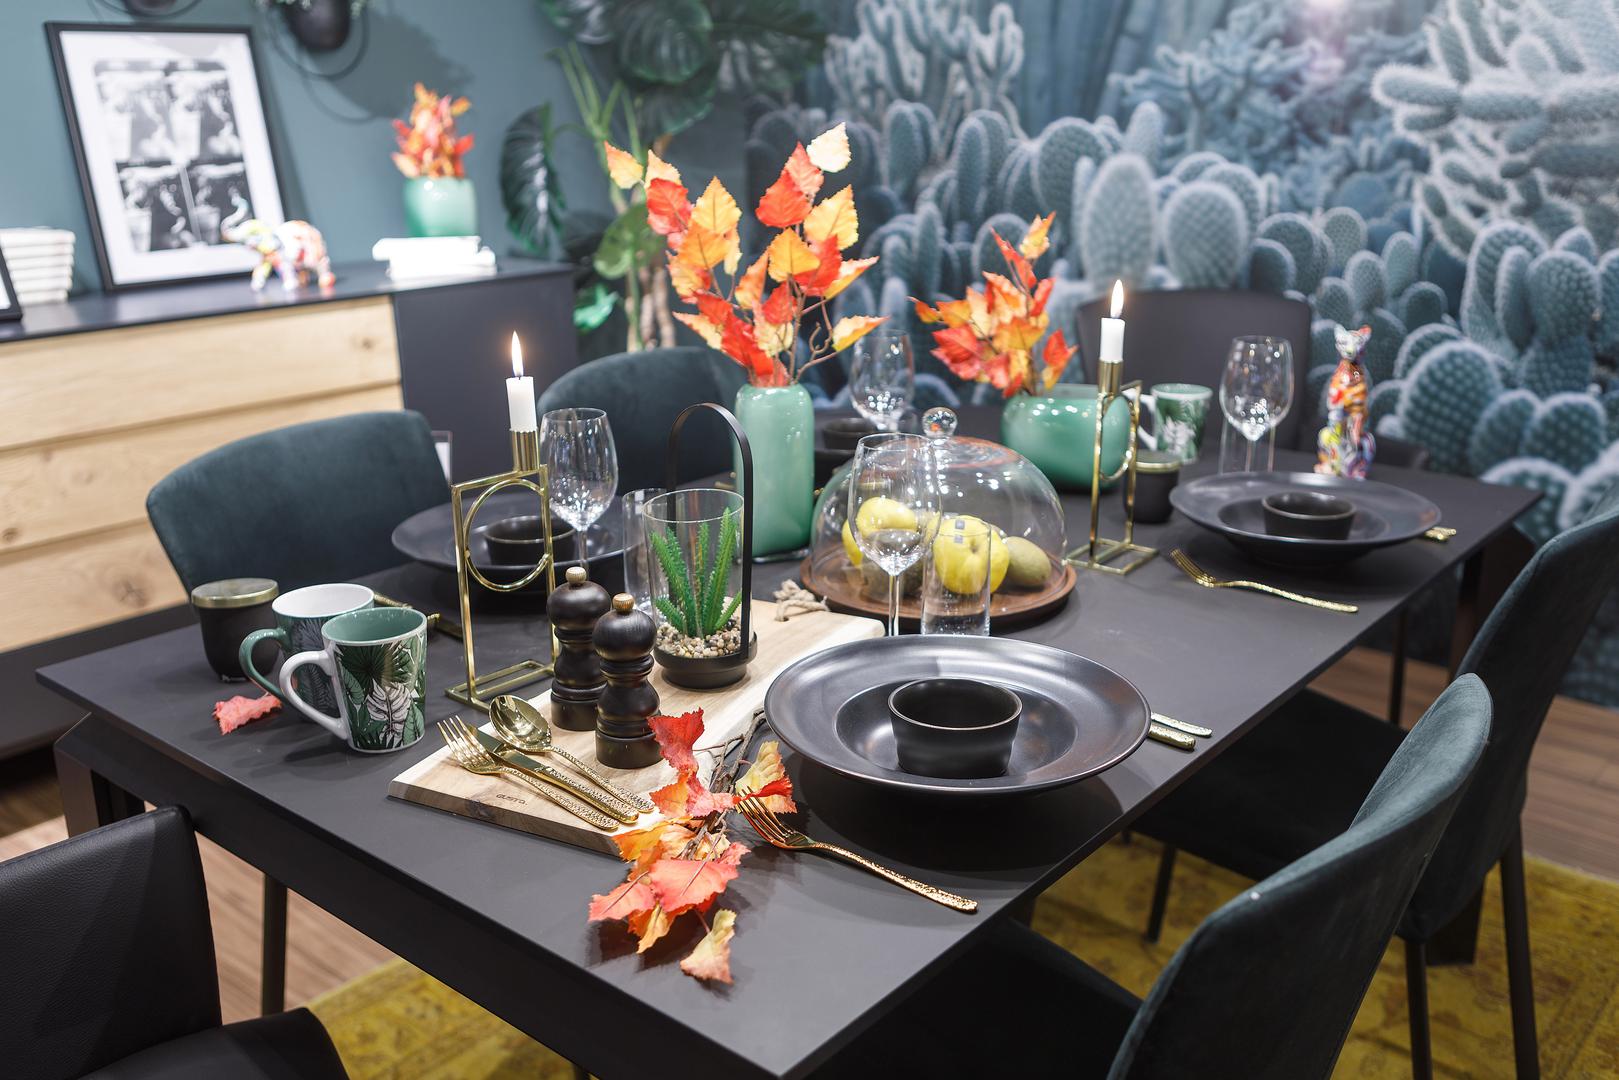 Potrudite se oko dekoracija na blagovaoničkom stolu, jesen obiluje prirodnim ukrasima